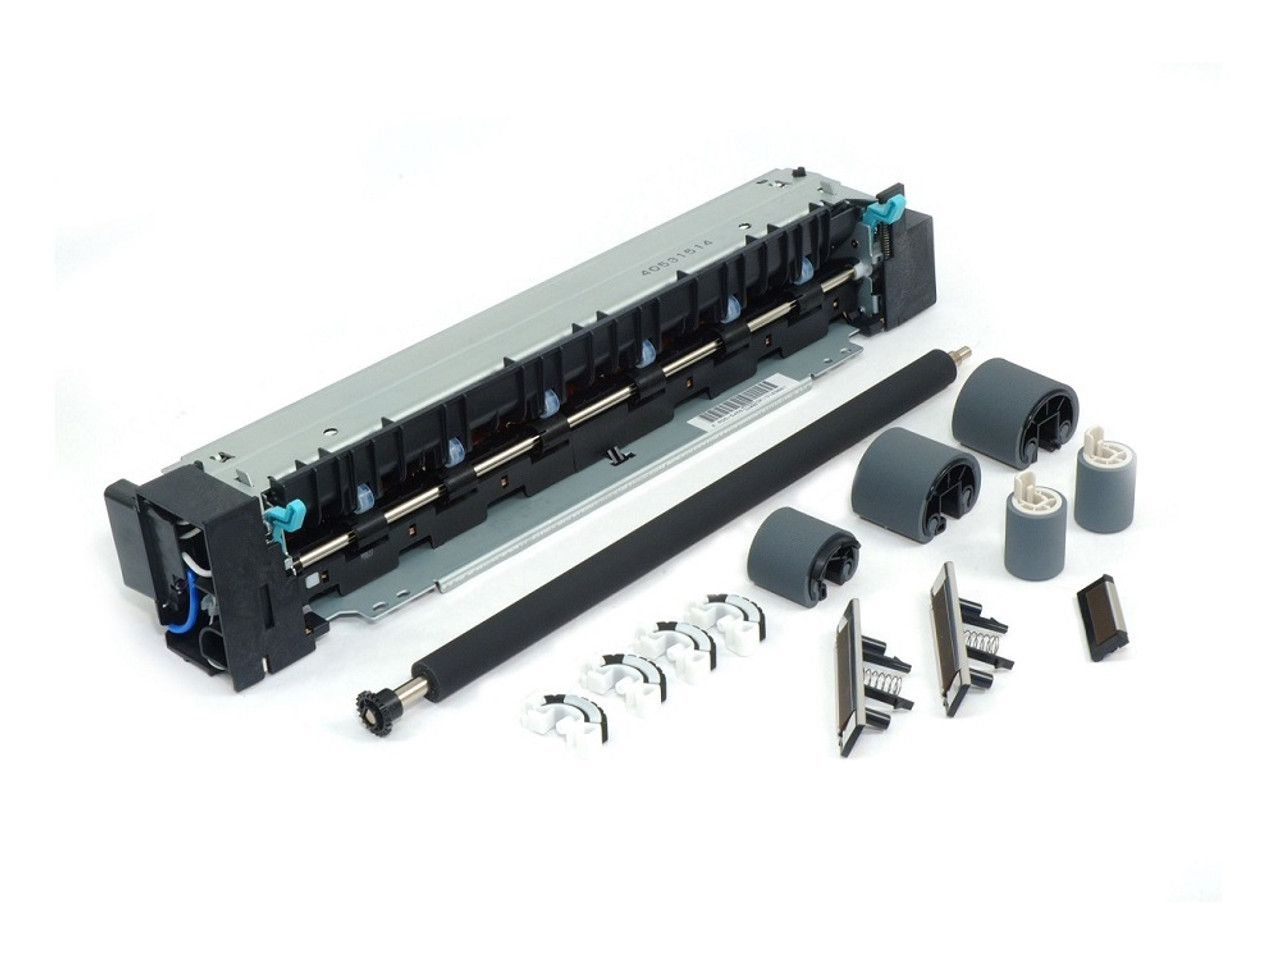 C4118-69001 -HP Maintenance Kit (110V) for LaserJet 4000 / 4050 Series Printer